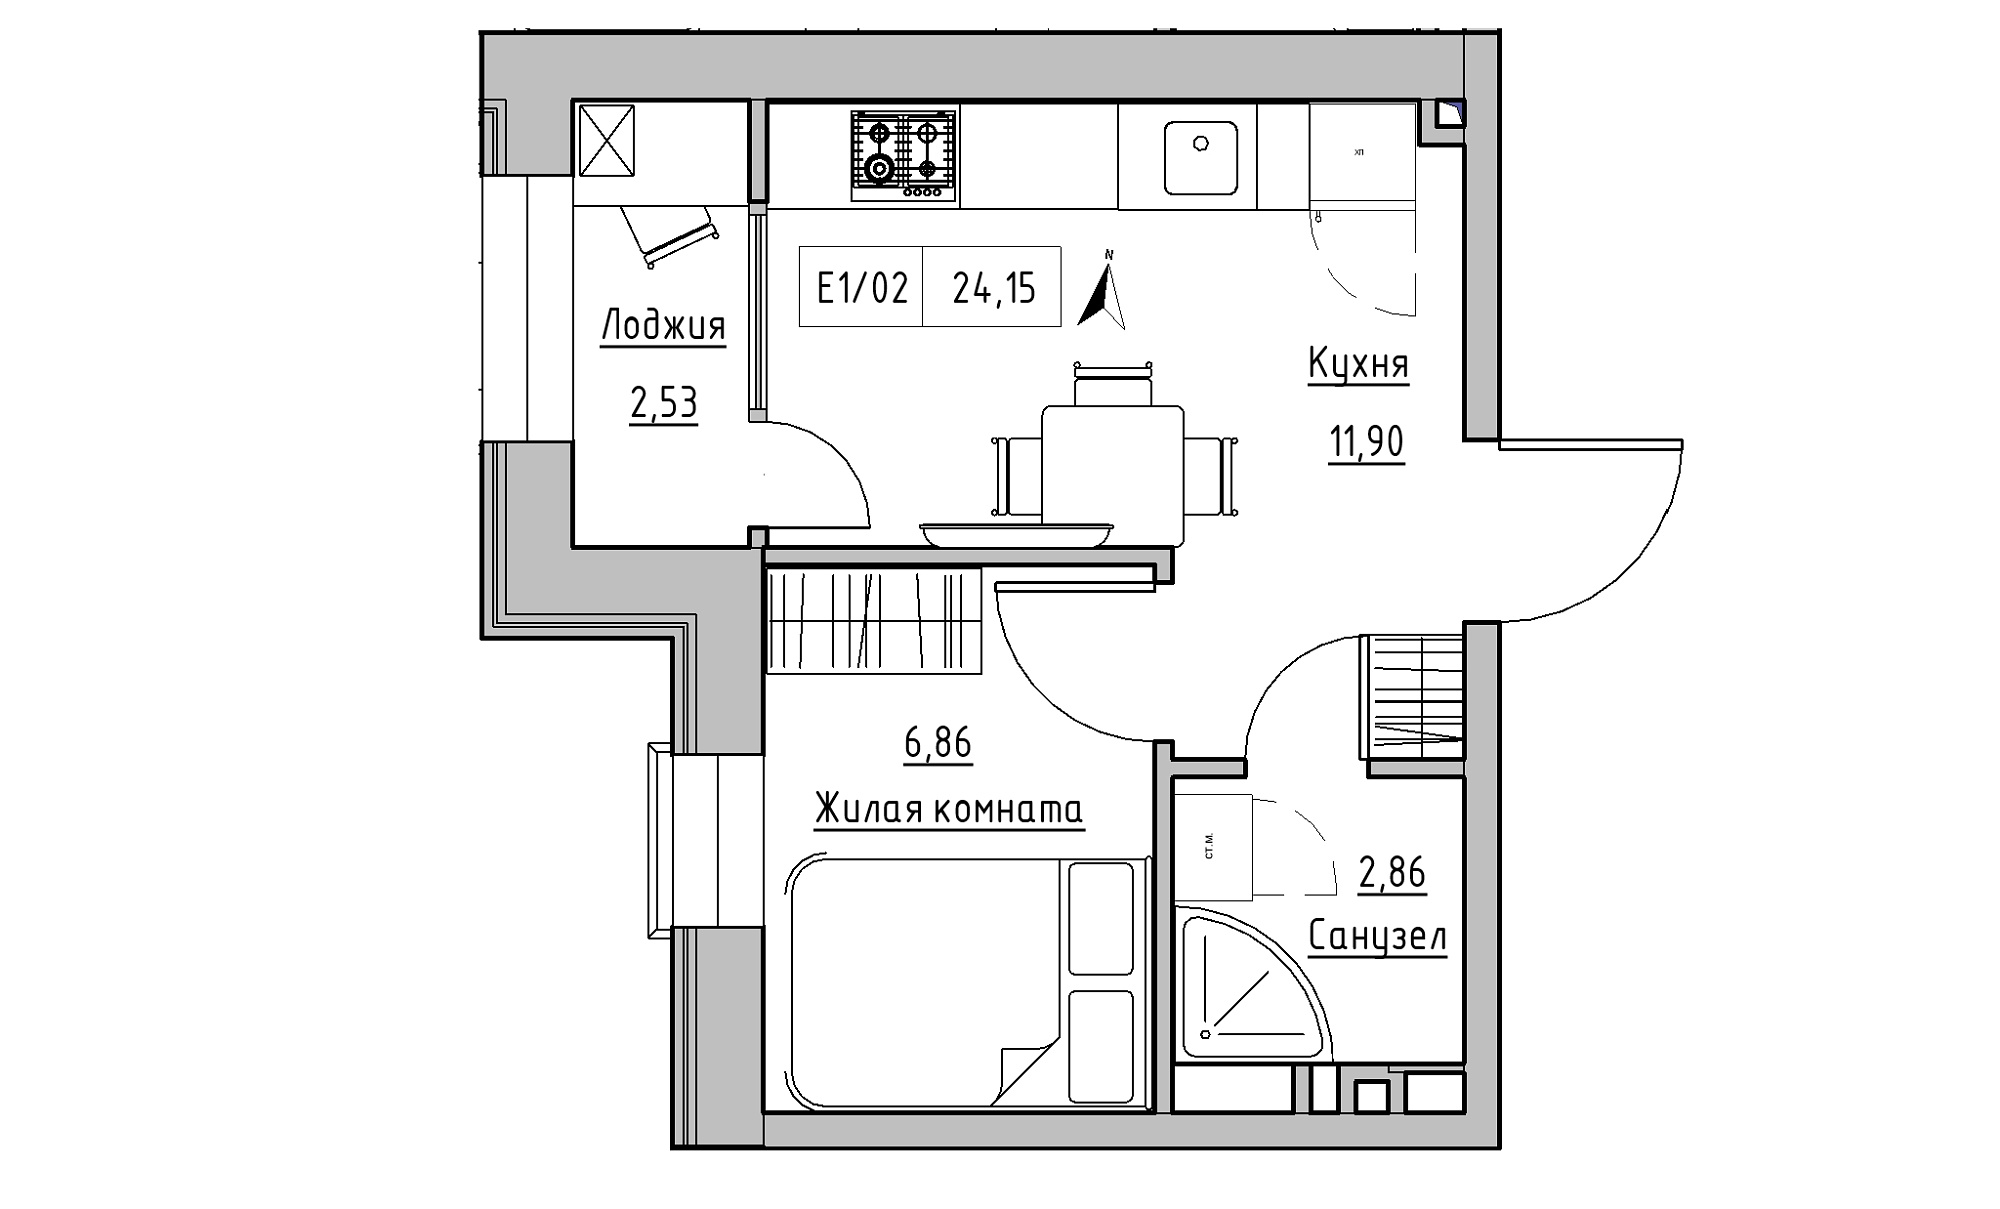 Планування 1-к квартира площею 24.15м2, KS-015-04/0001.